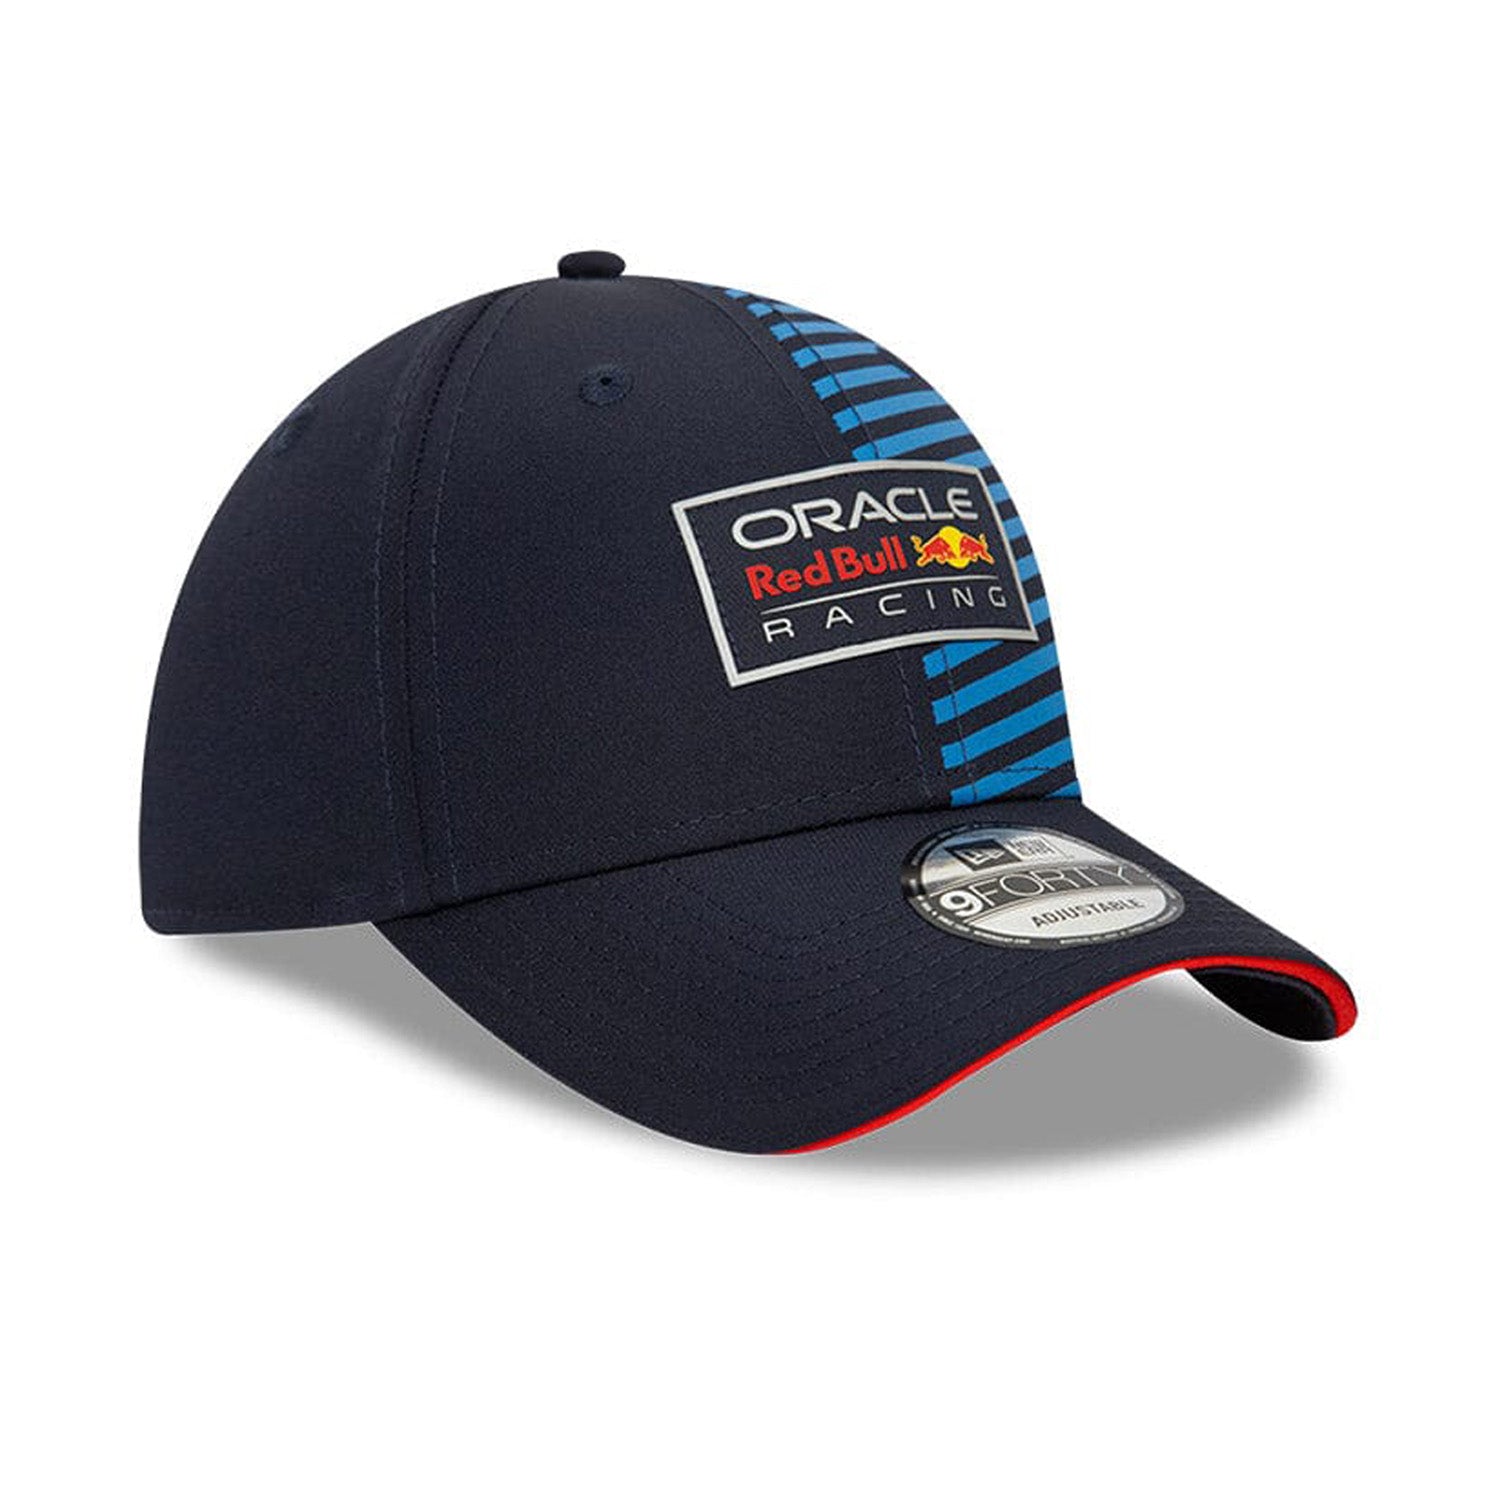 2024 Team Cap - Red Bull Racing - Fueler store